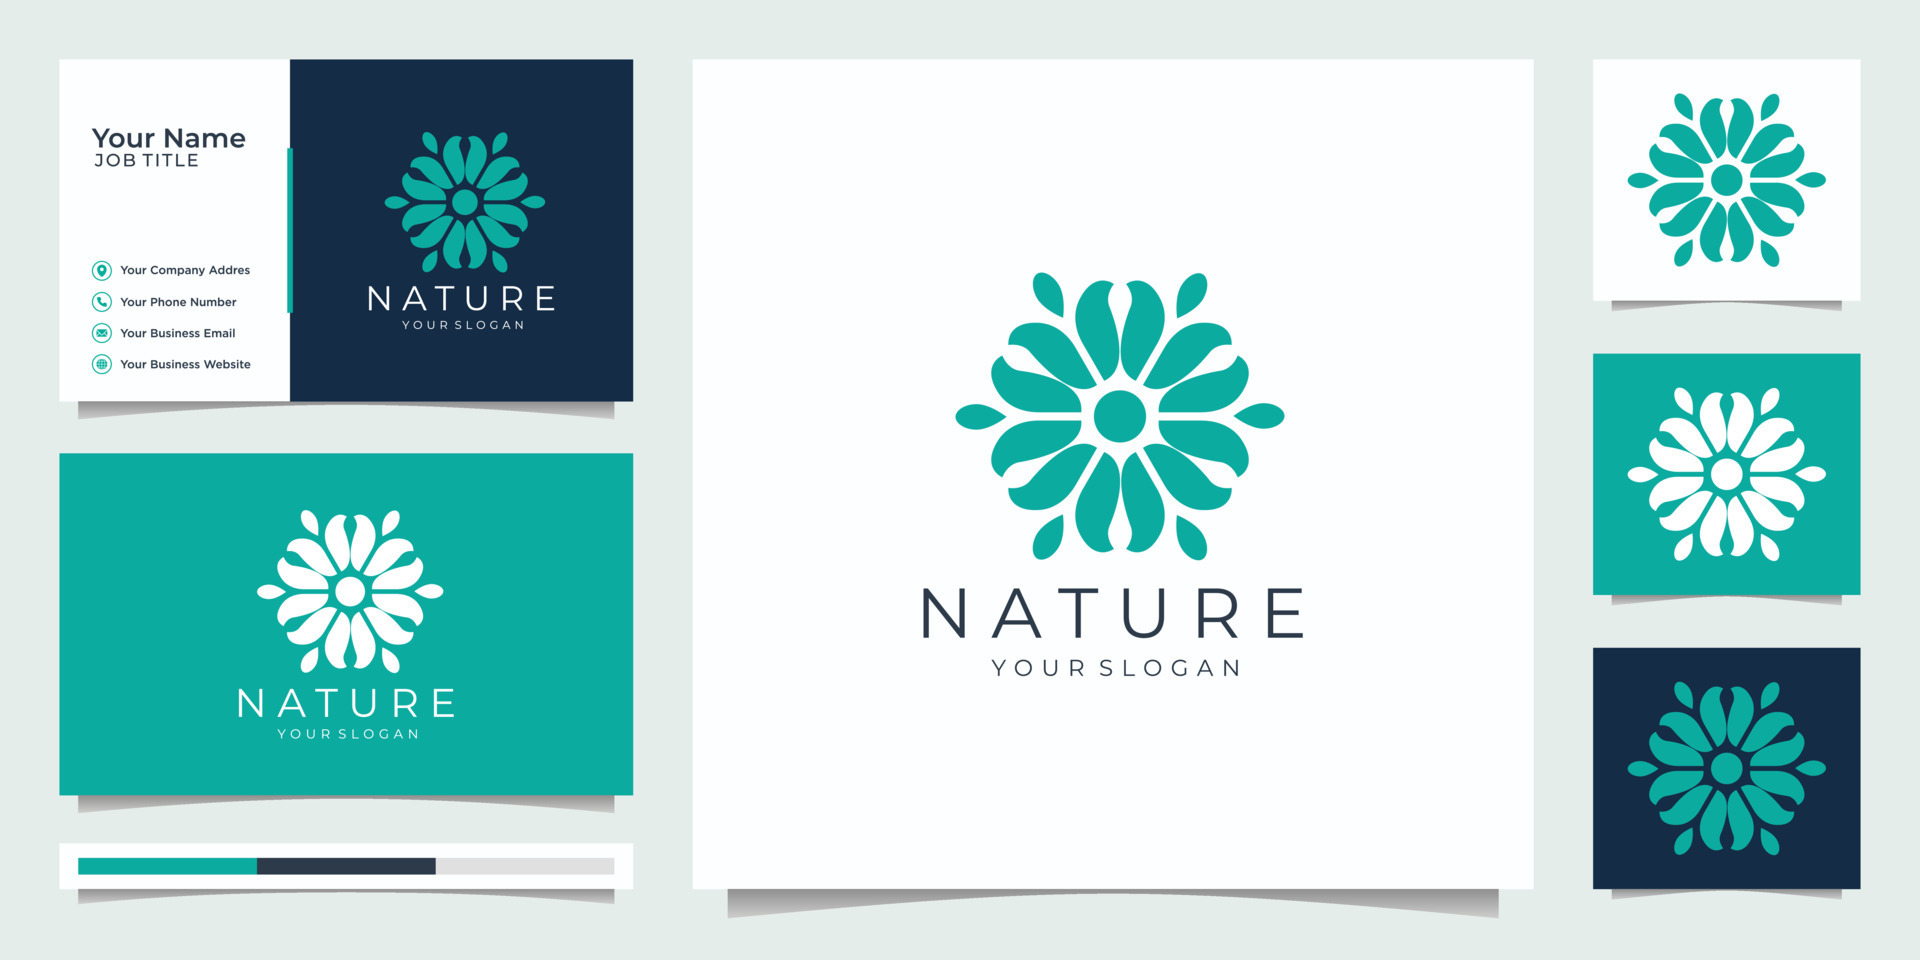 Premium Vector  Monogram flower logo design template